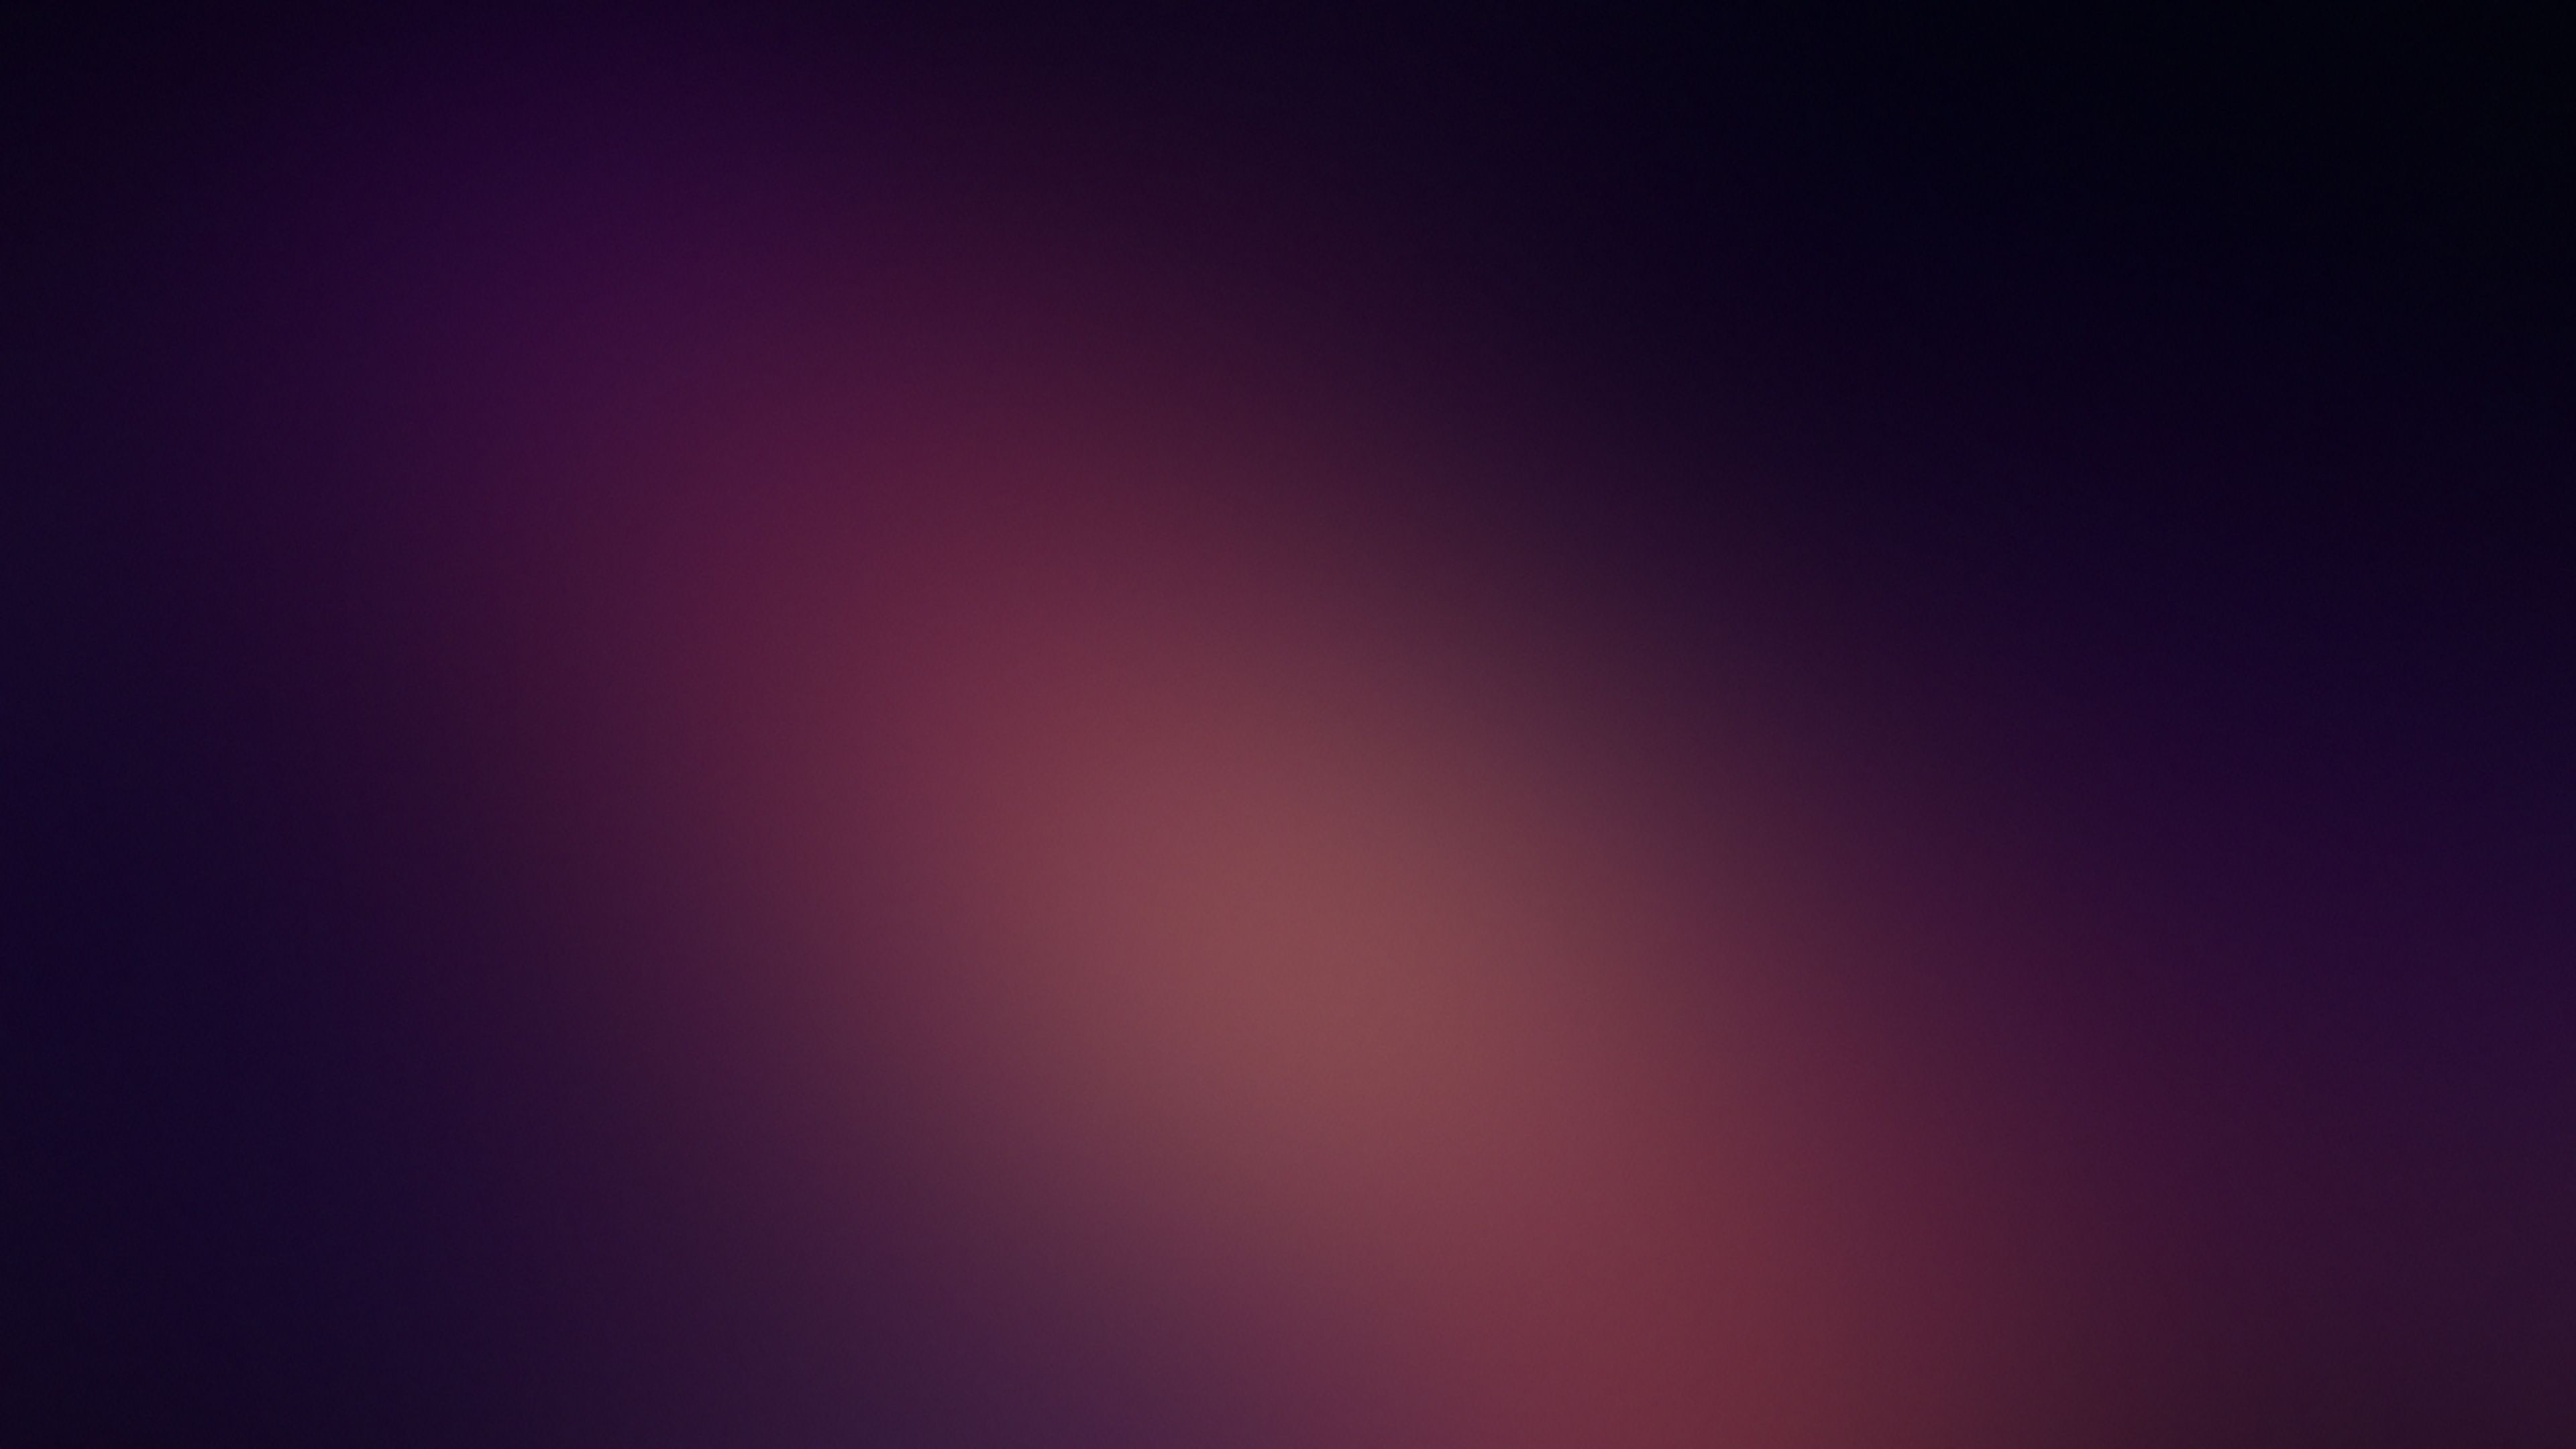 Dark Minimalist Blur 4k, HD Abstract, 4k Wallpaper, Image